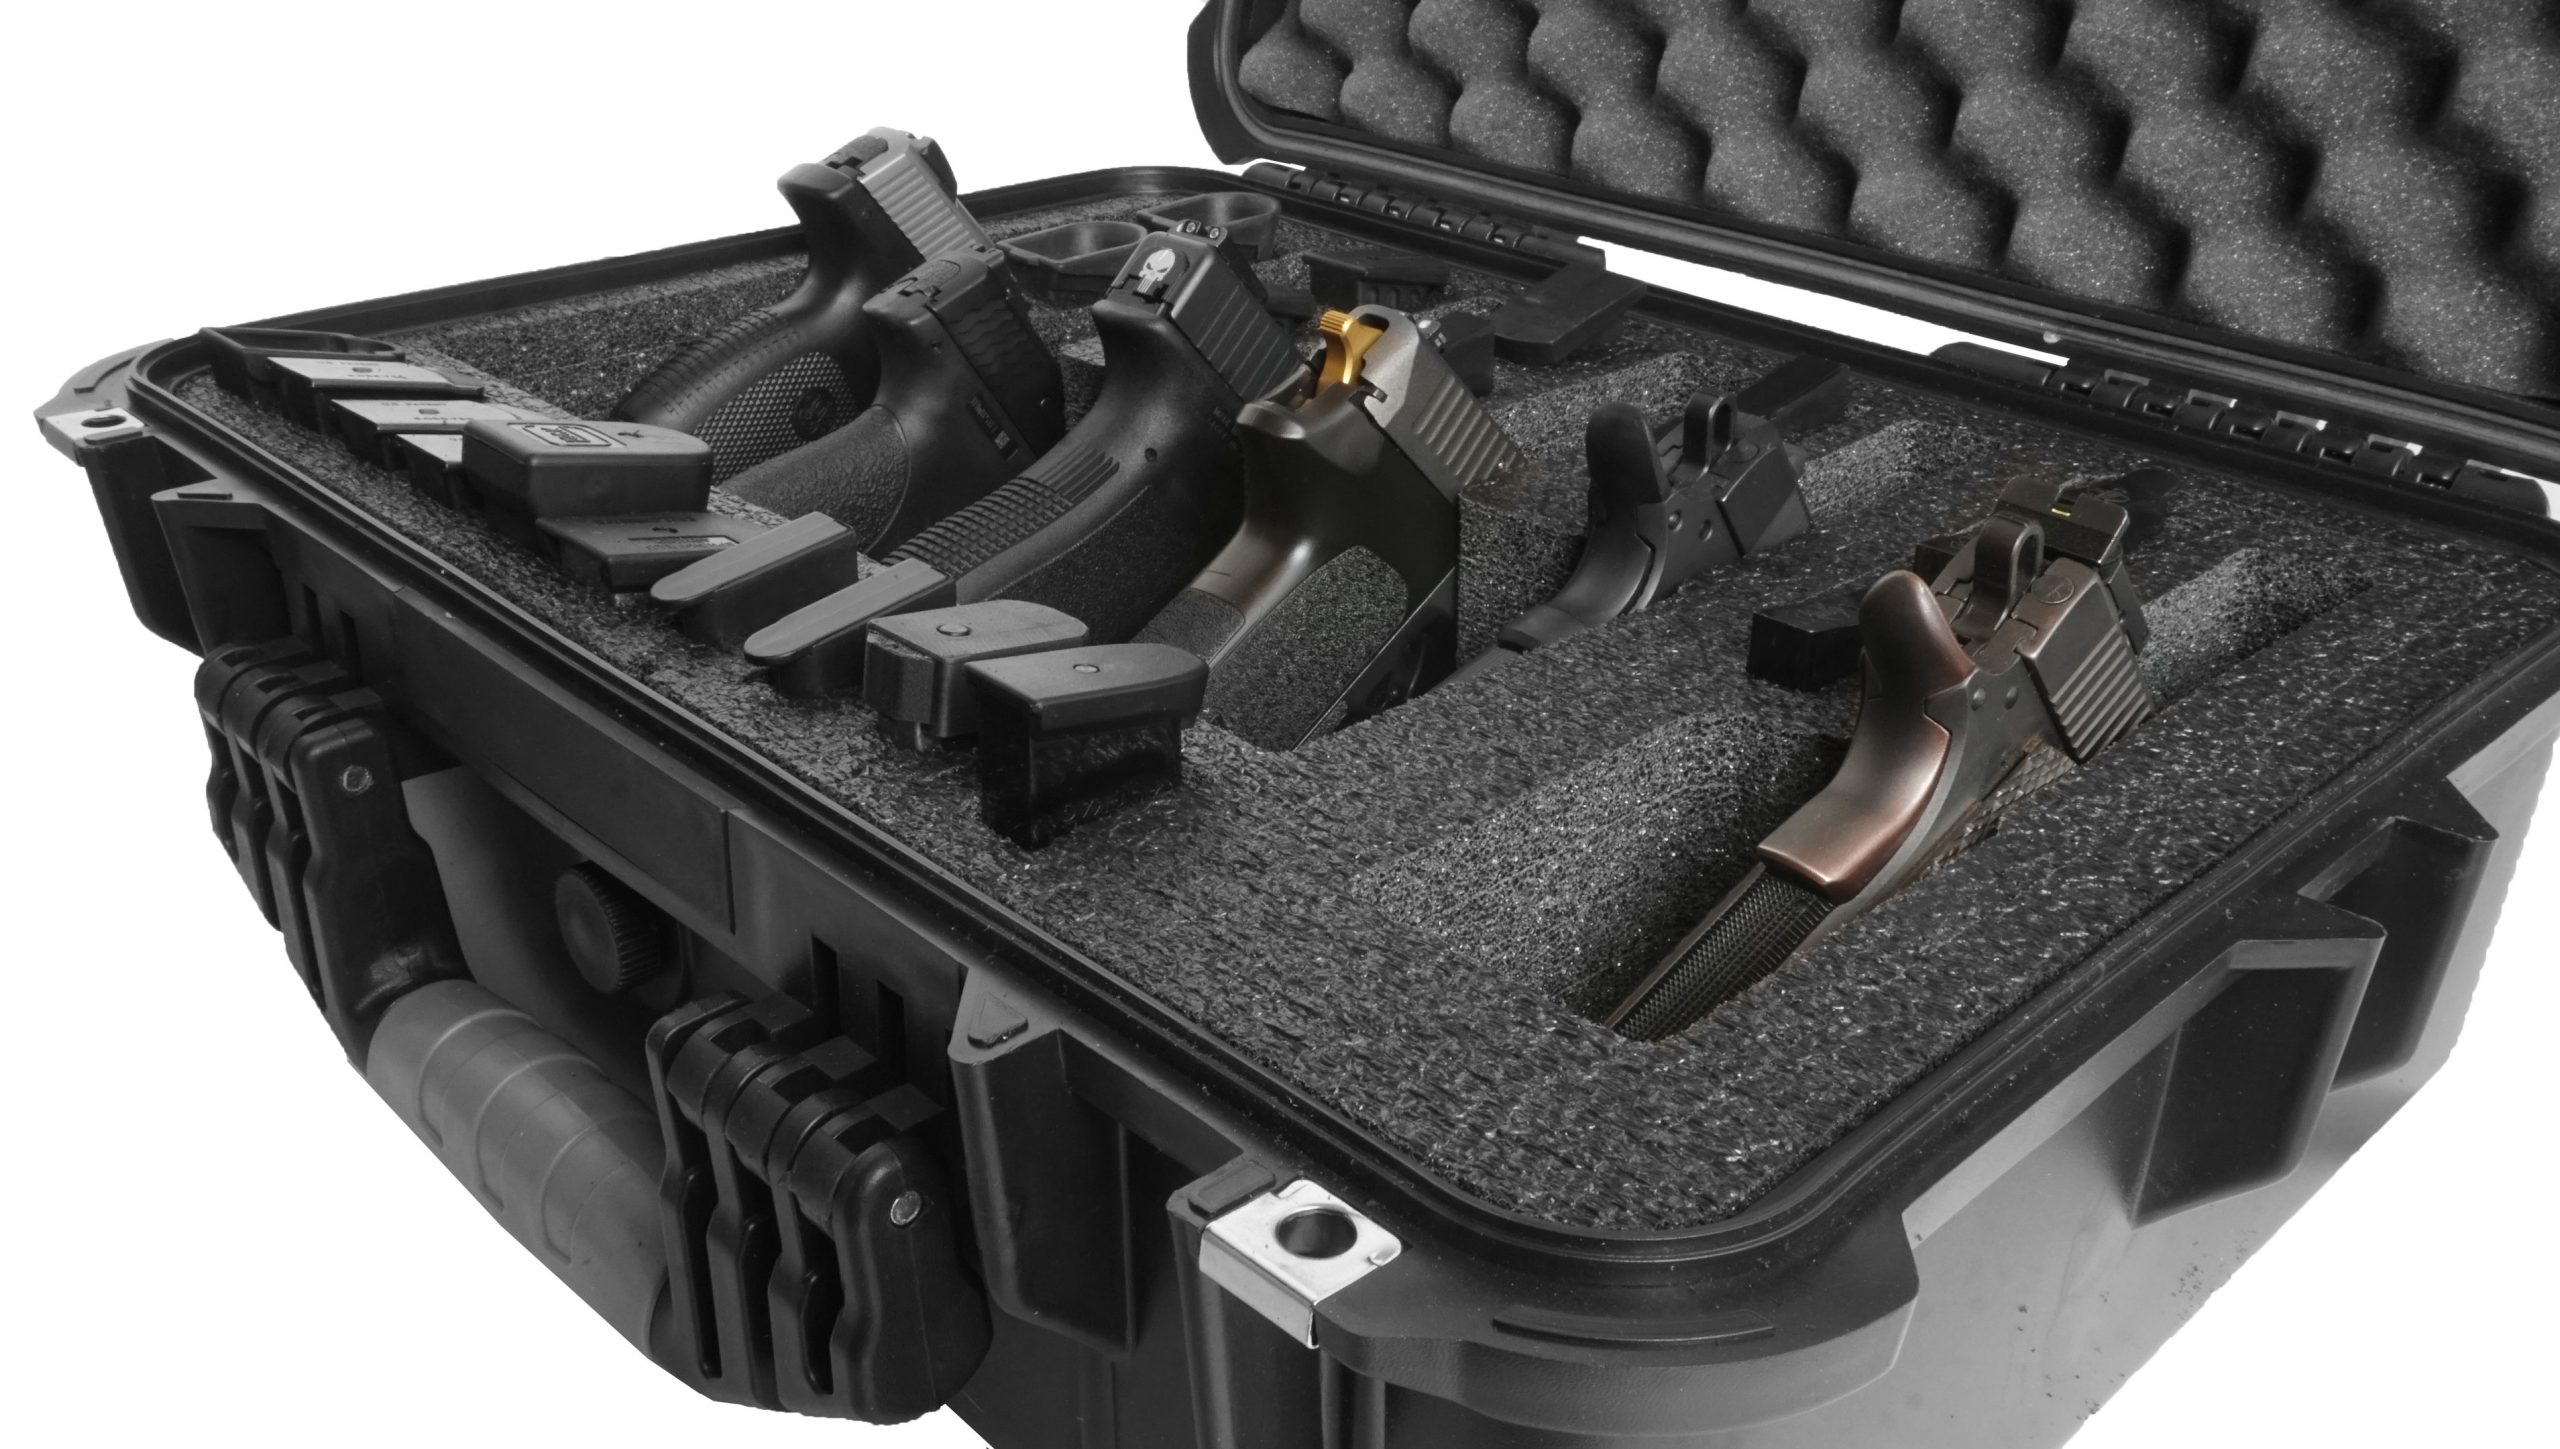  Apache 4800 Range Case Foam Insert for 6 Handguns and